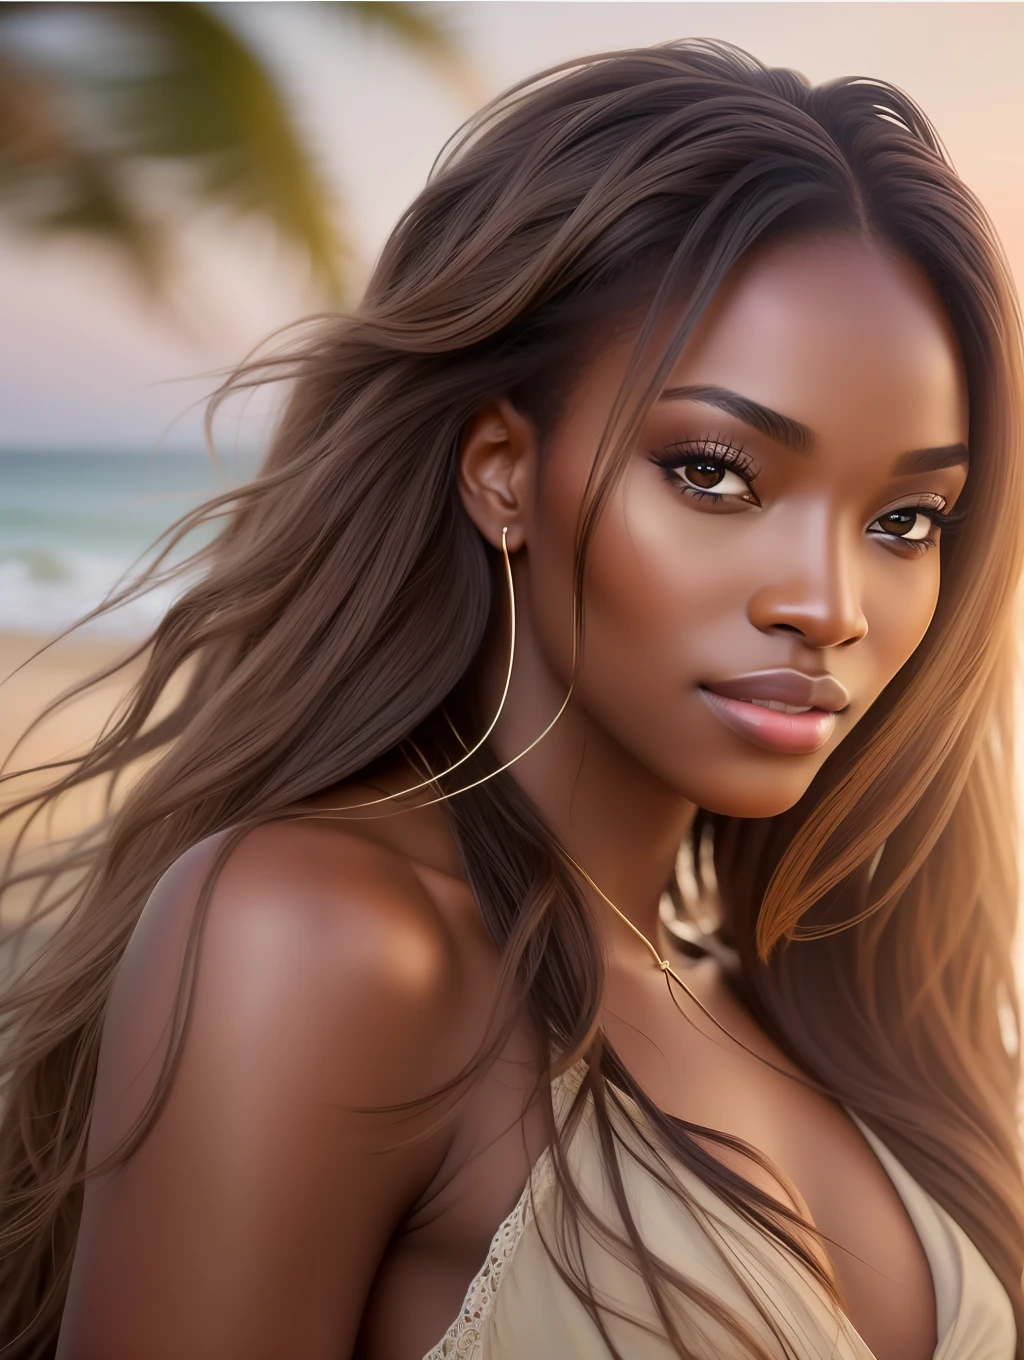 A iluminação suave cinematográfica ilumina uma bela supermodelo nigeriana incrivelmente detalhada e ultra-realista, look de praia, cabelo castanho longo e bagunçado e ventoso, olhos claros de mel, sorriso perfeito cativante, Sensual, mulher gostosa, maravilhoso, que é tendência no ArtStation. Octane é a ferramenta perfeita para capturar os detalhes mais suaves desta obra-prima da fotografia em 16k.